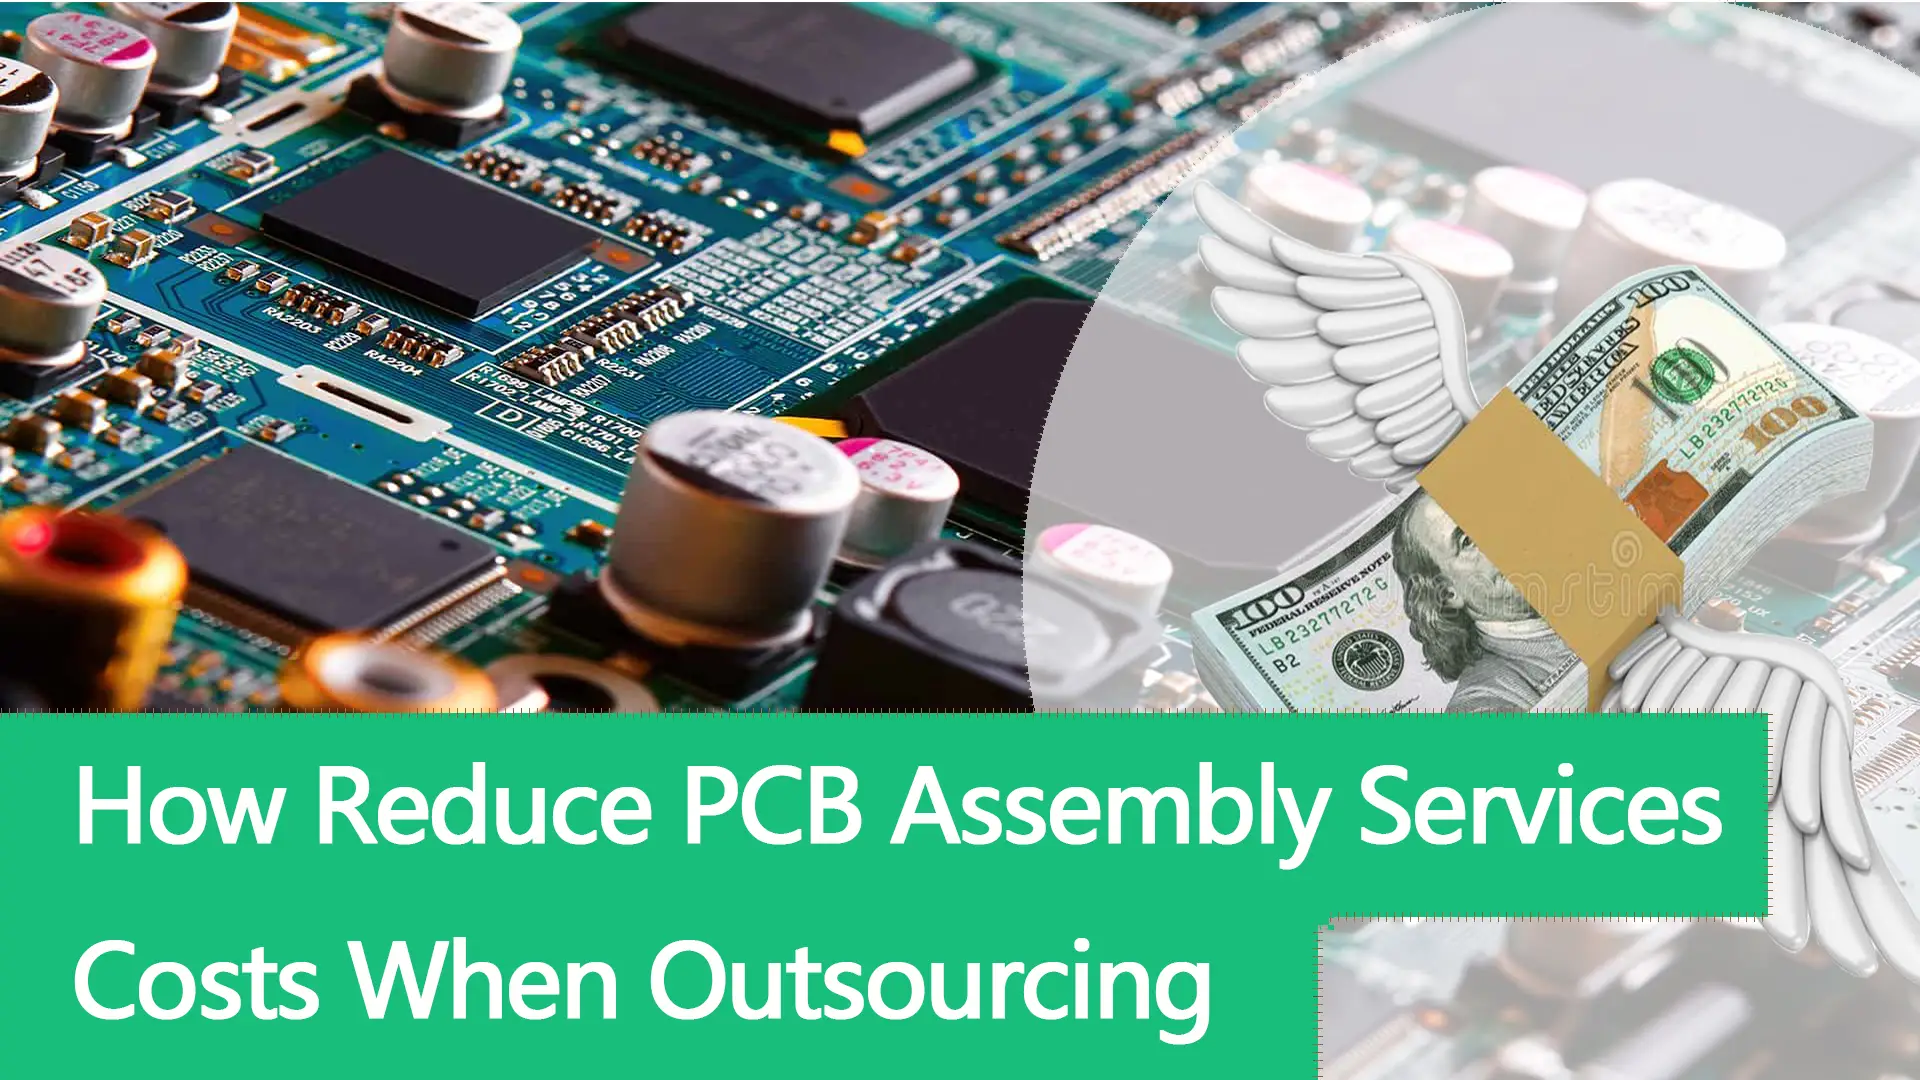 Cómo reducir los costos de los servicios de ensamblaje de PCB al subcontratar